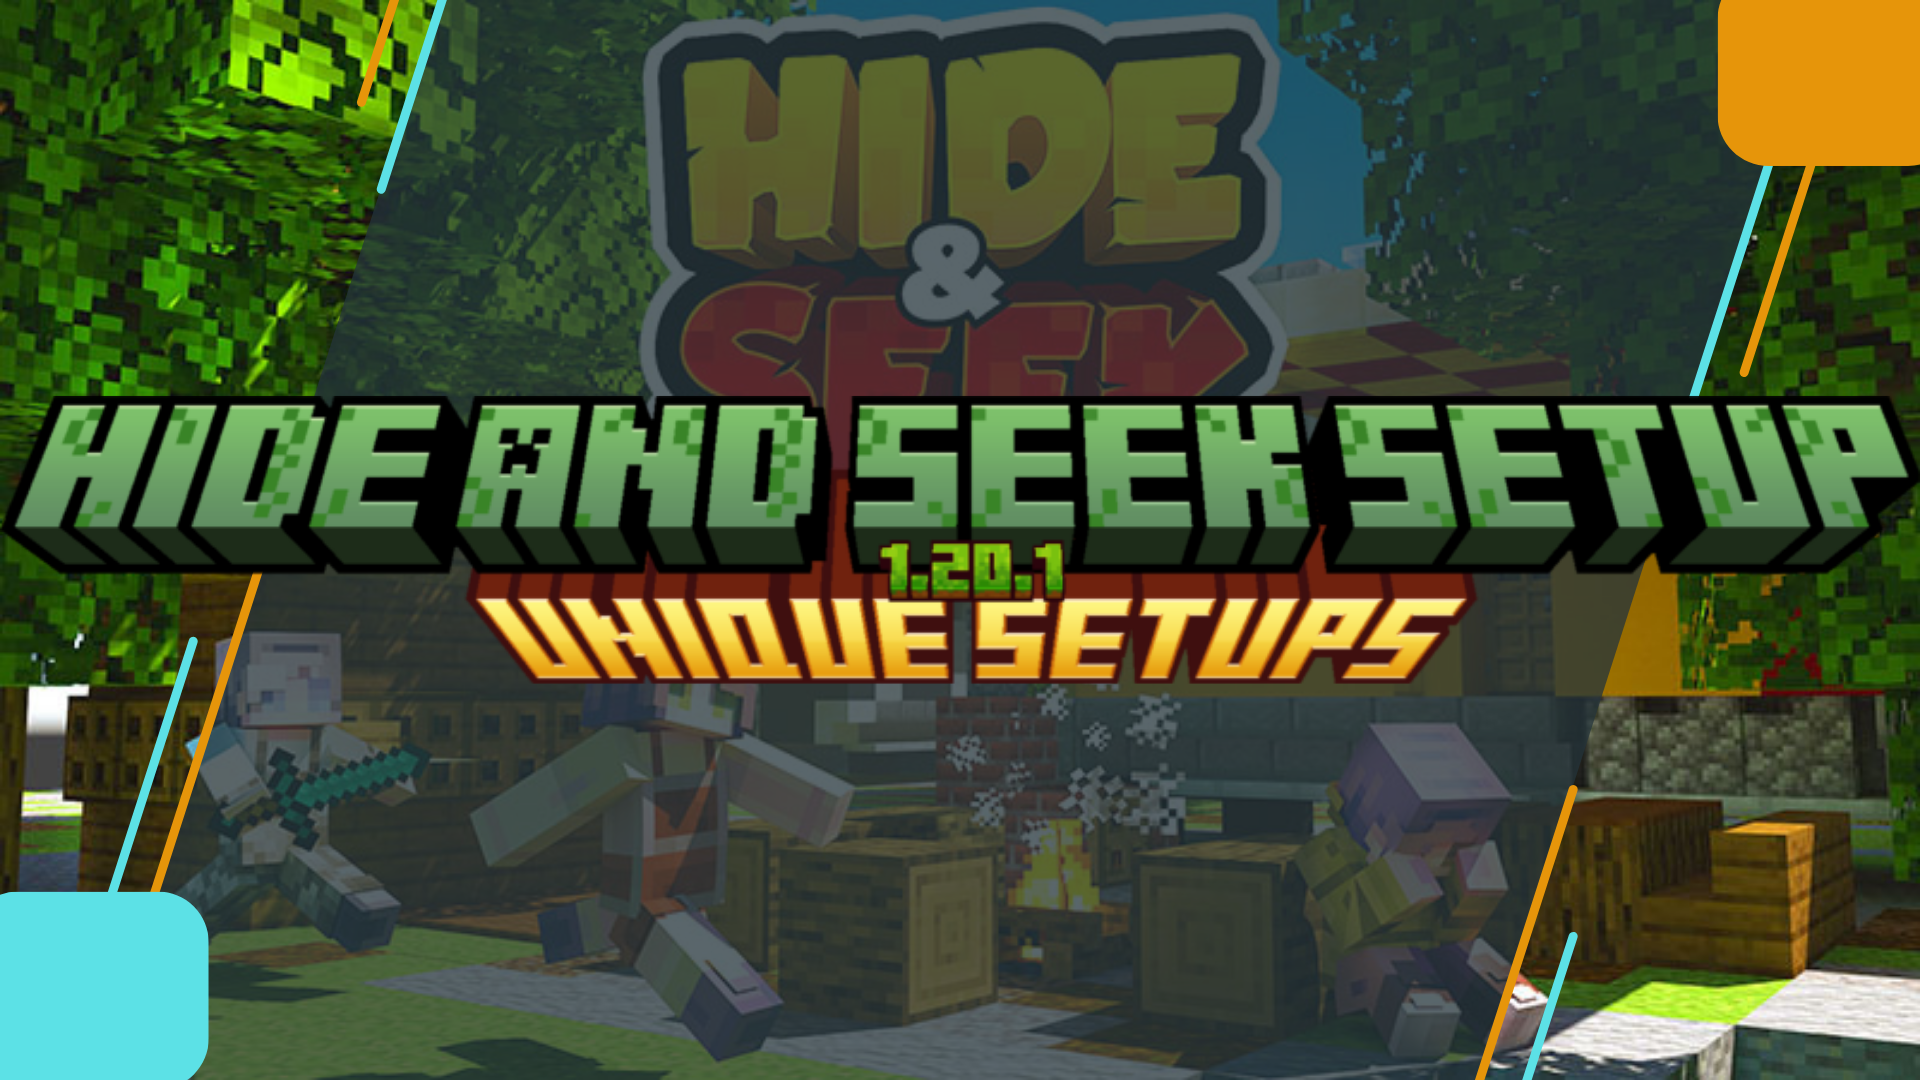 Hive hide and seek